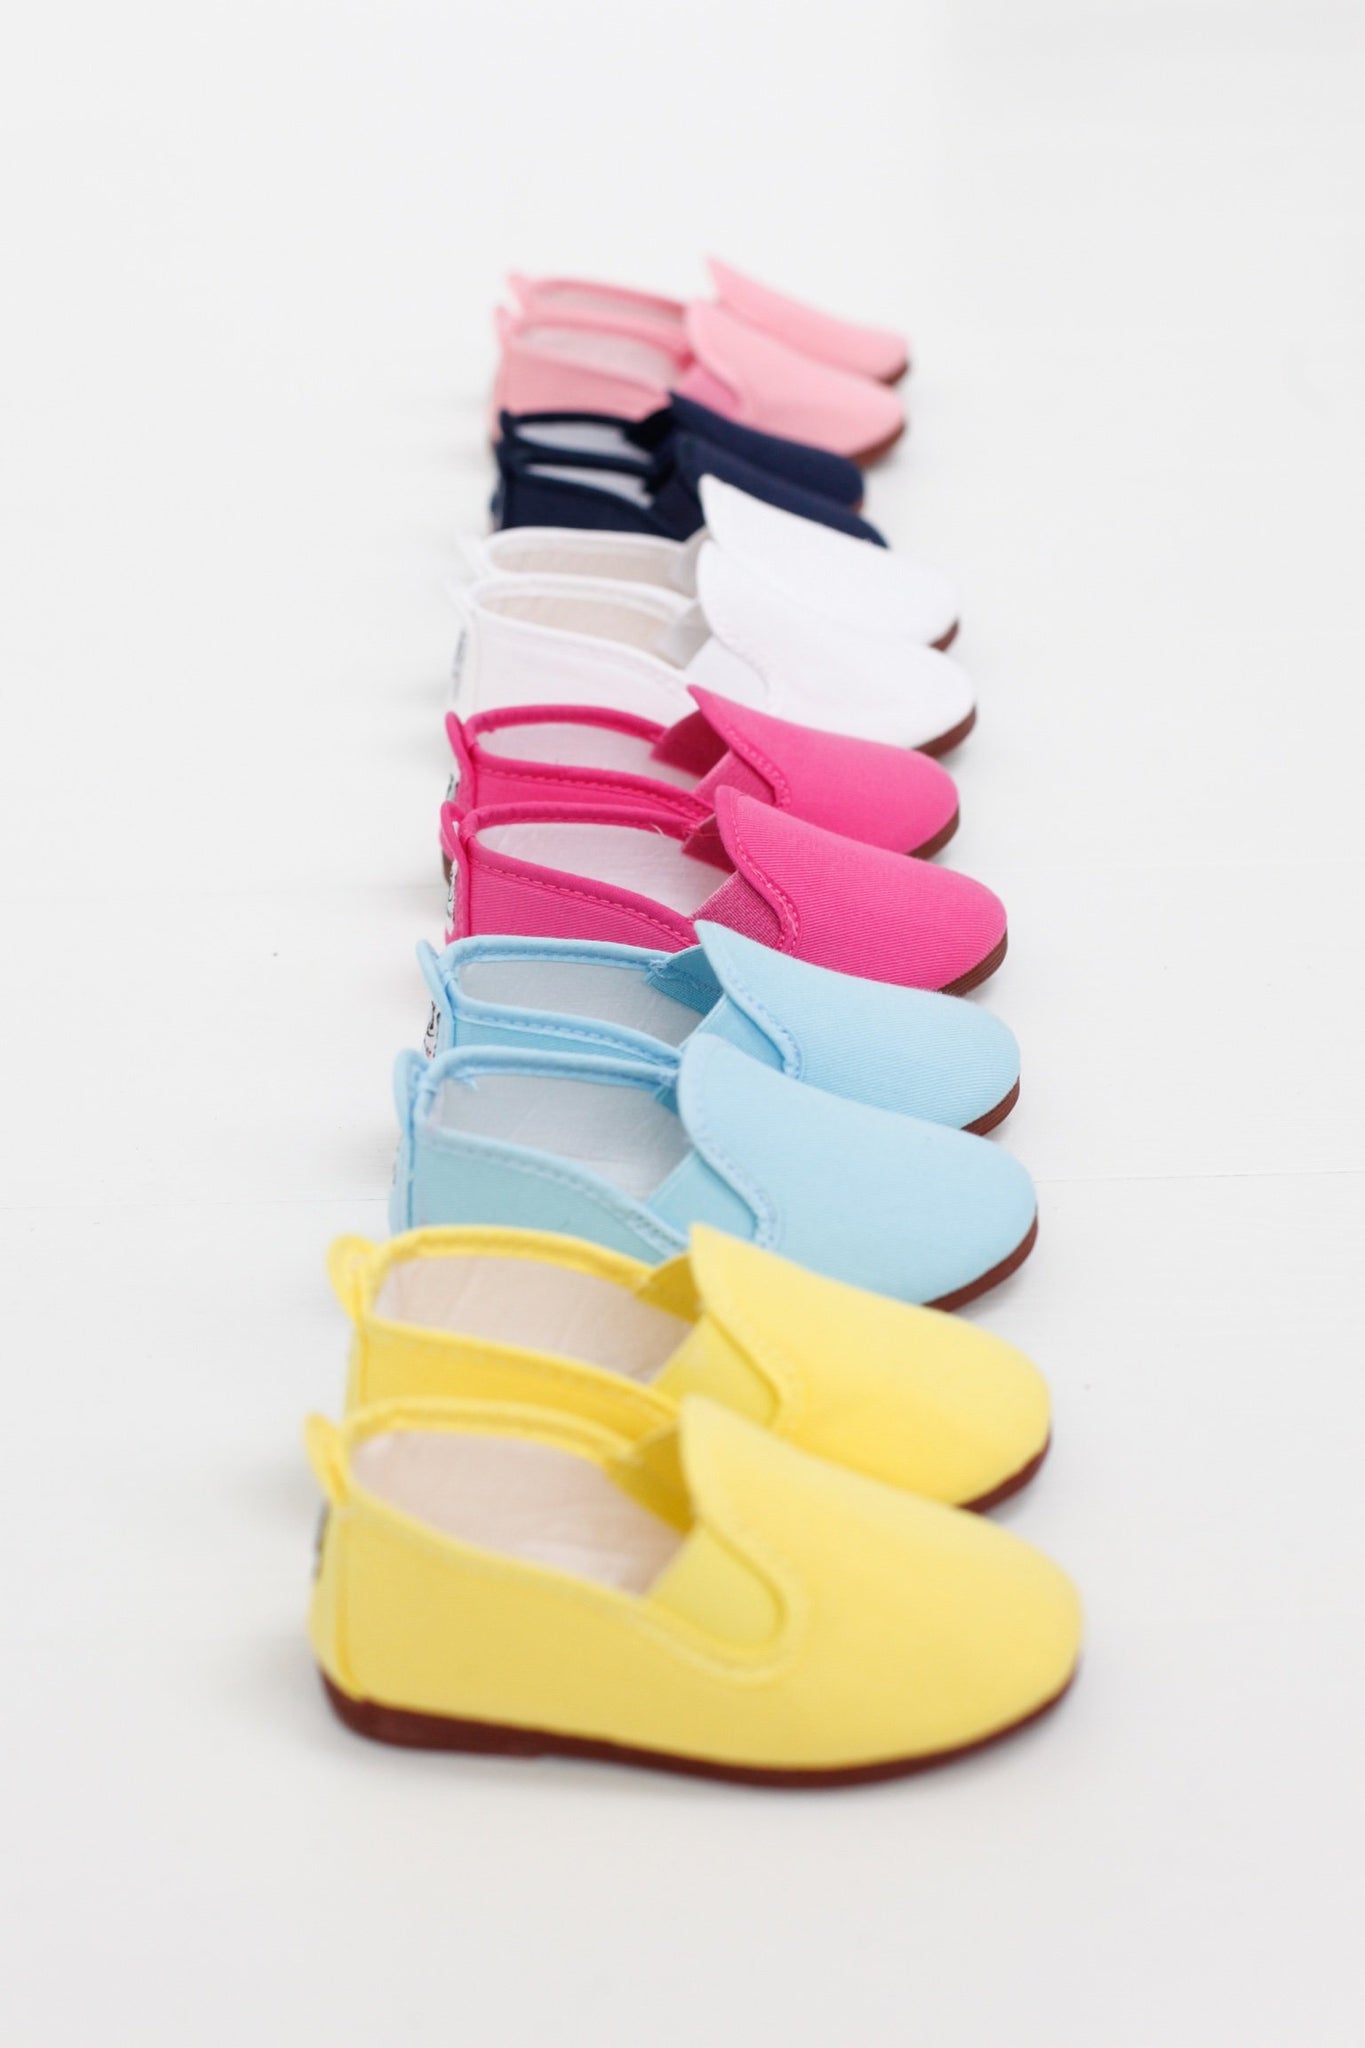 wholesale infant shoes